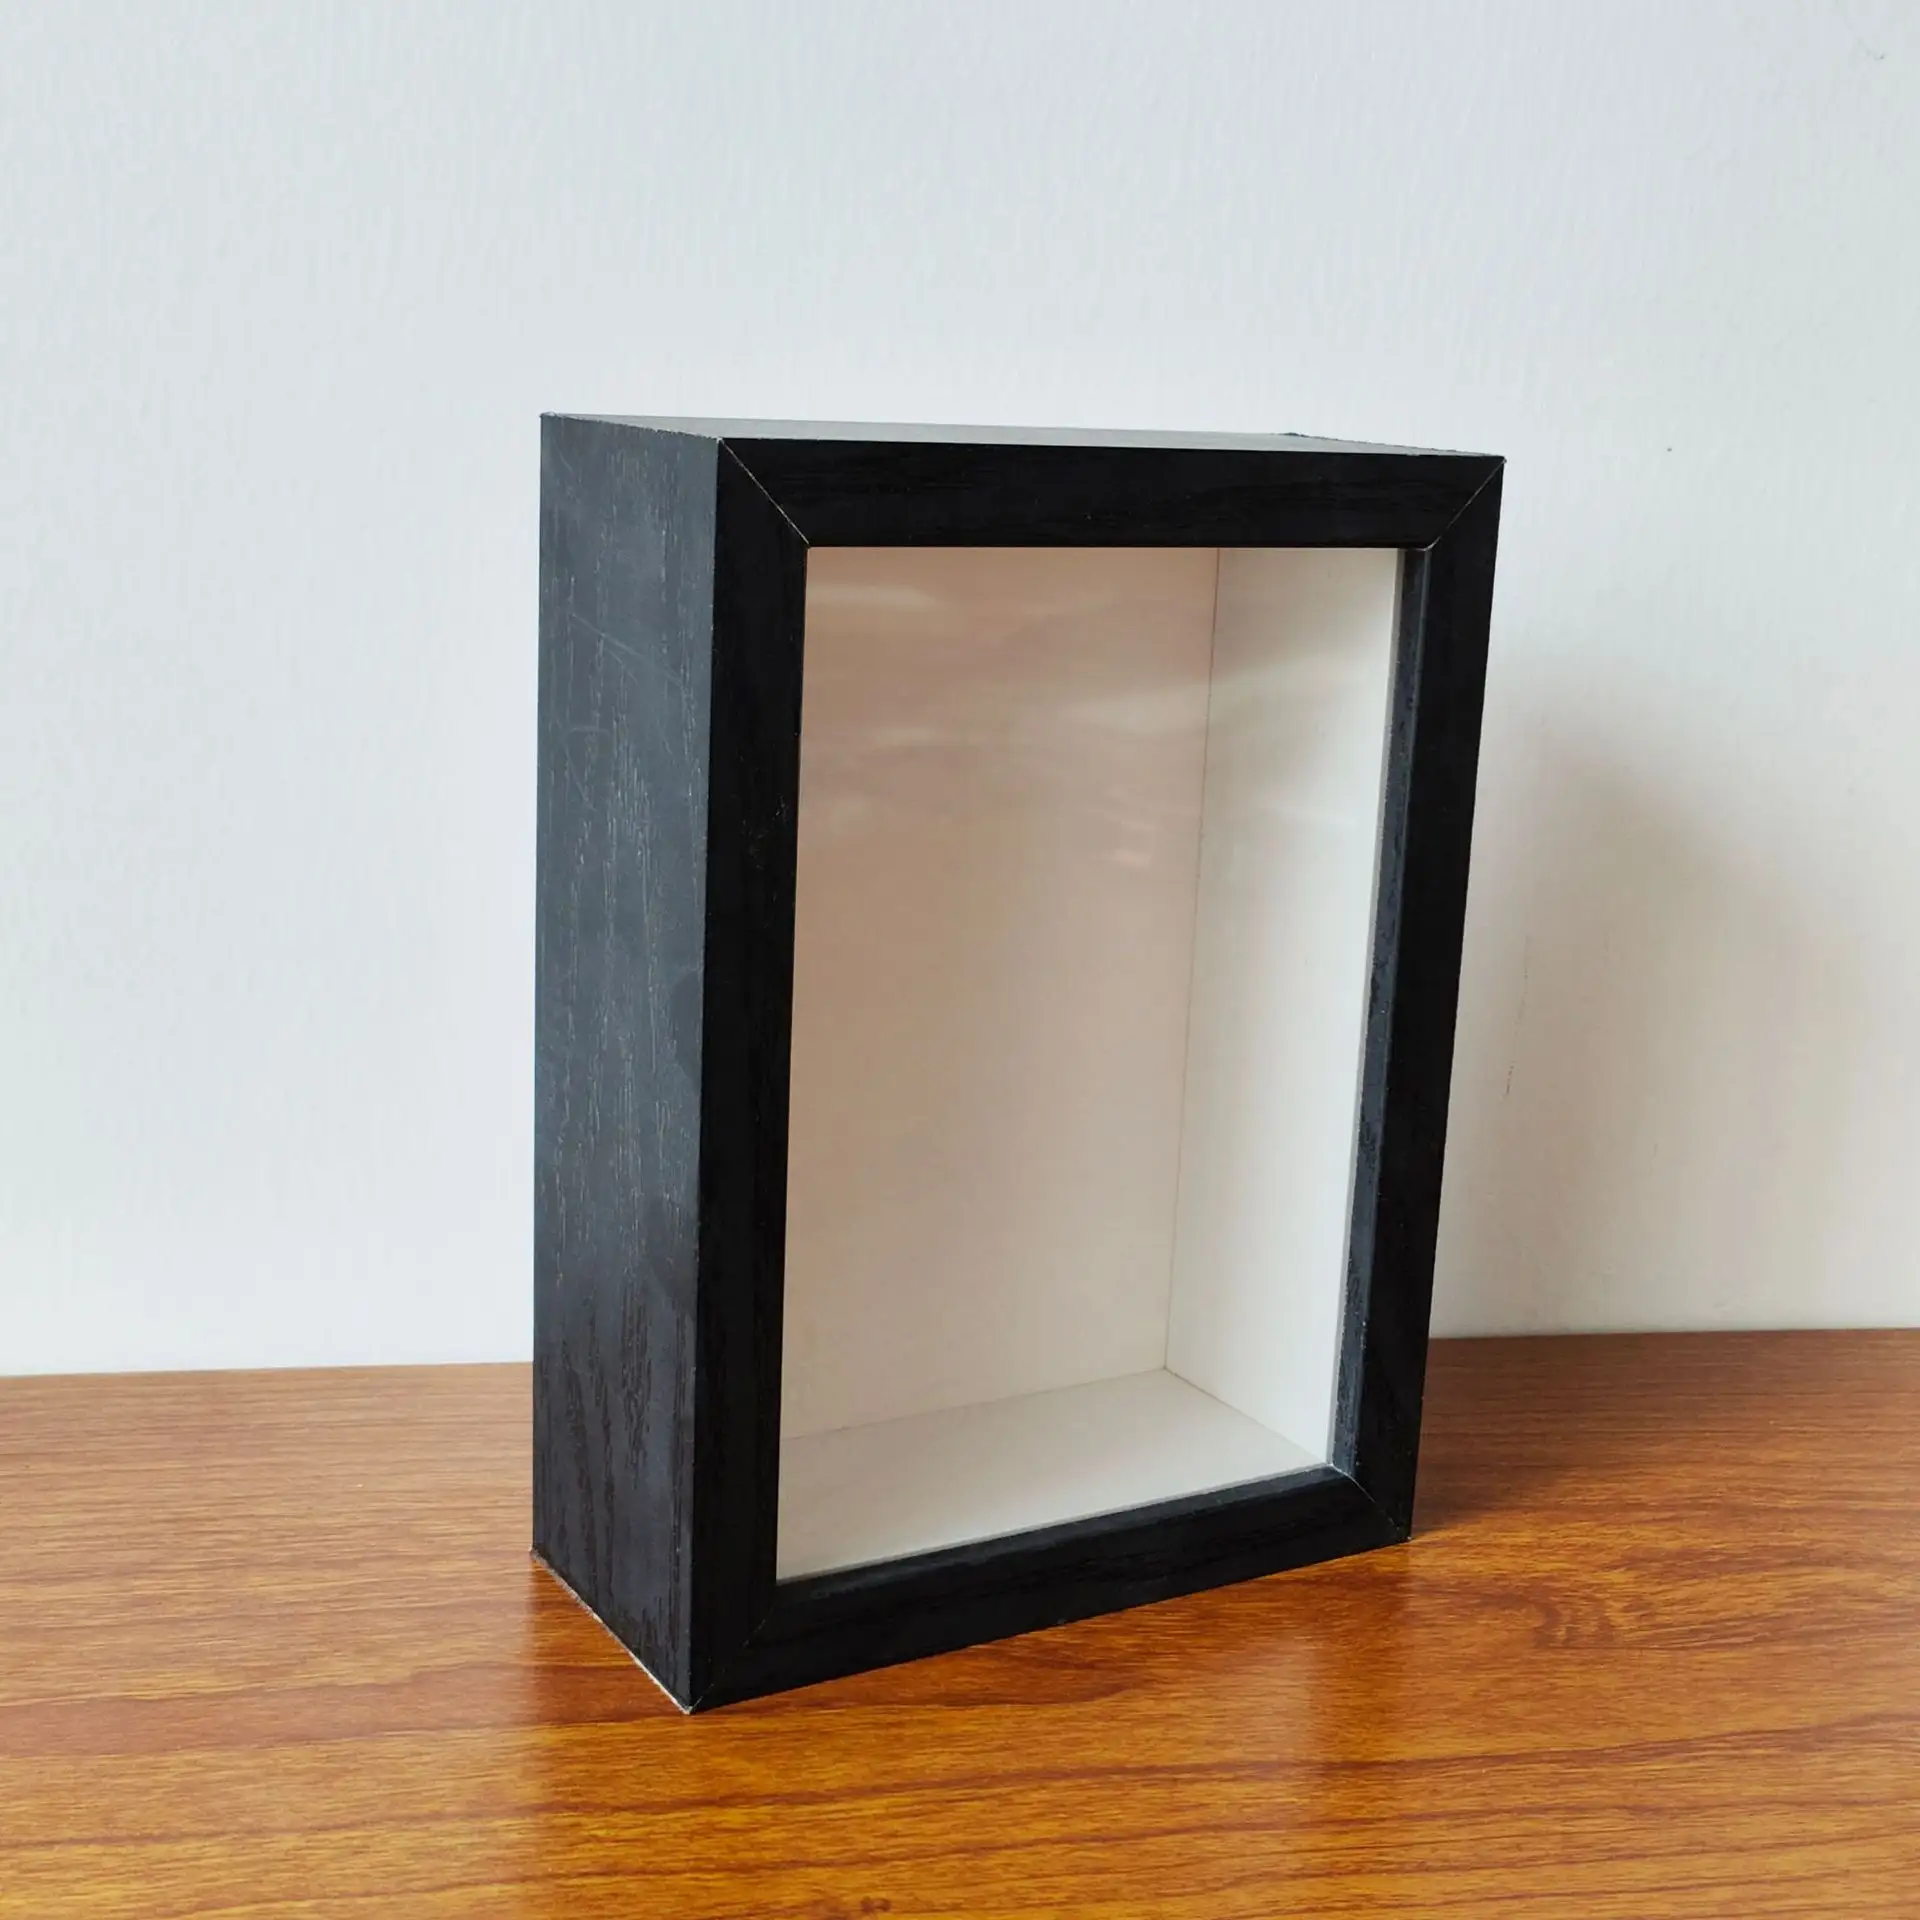 Marco de fotos de madera maciza, Marco 3D de 5CM de profundidad con vidrio resistente a Plexi, caja de sombra de madera para colgar en la pared de lino suave negro